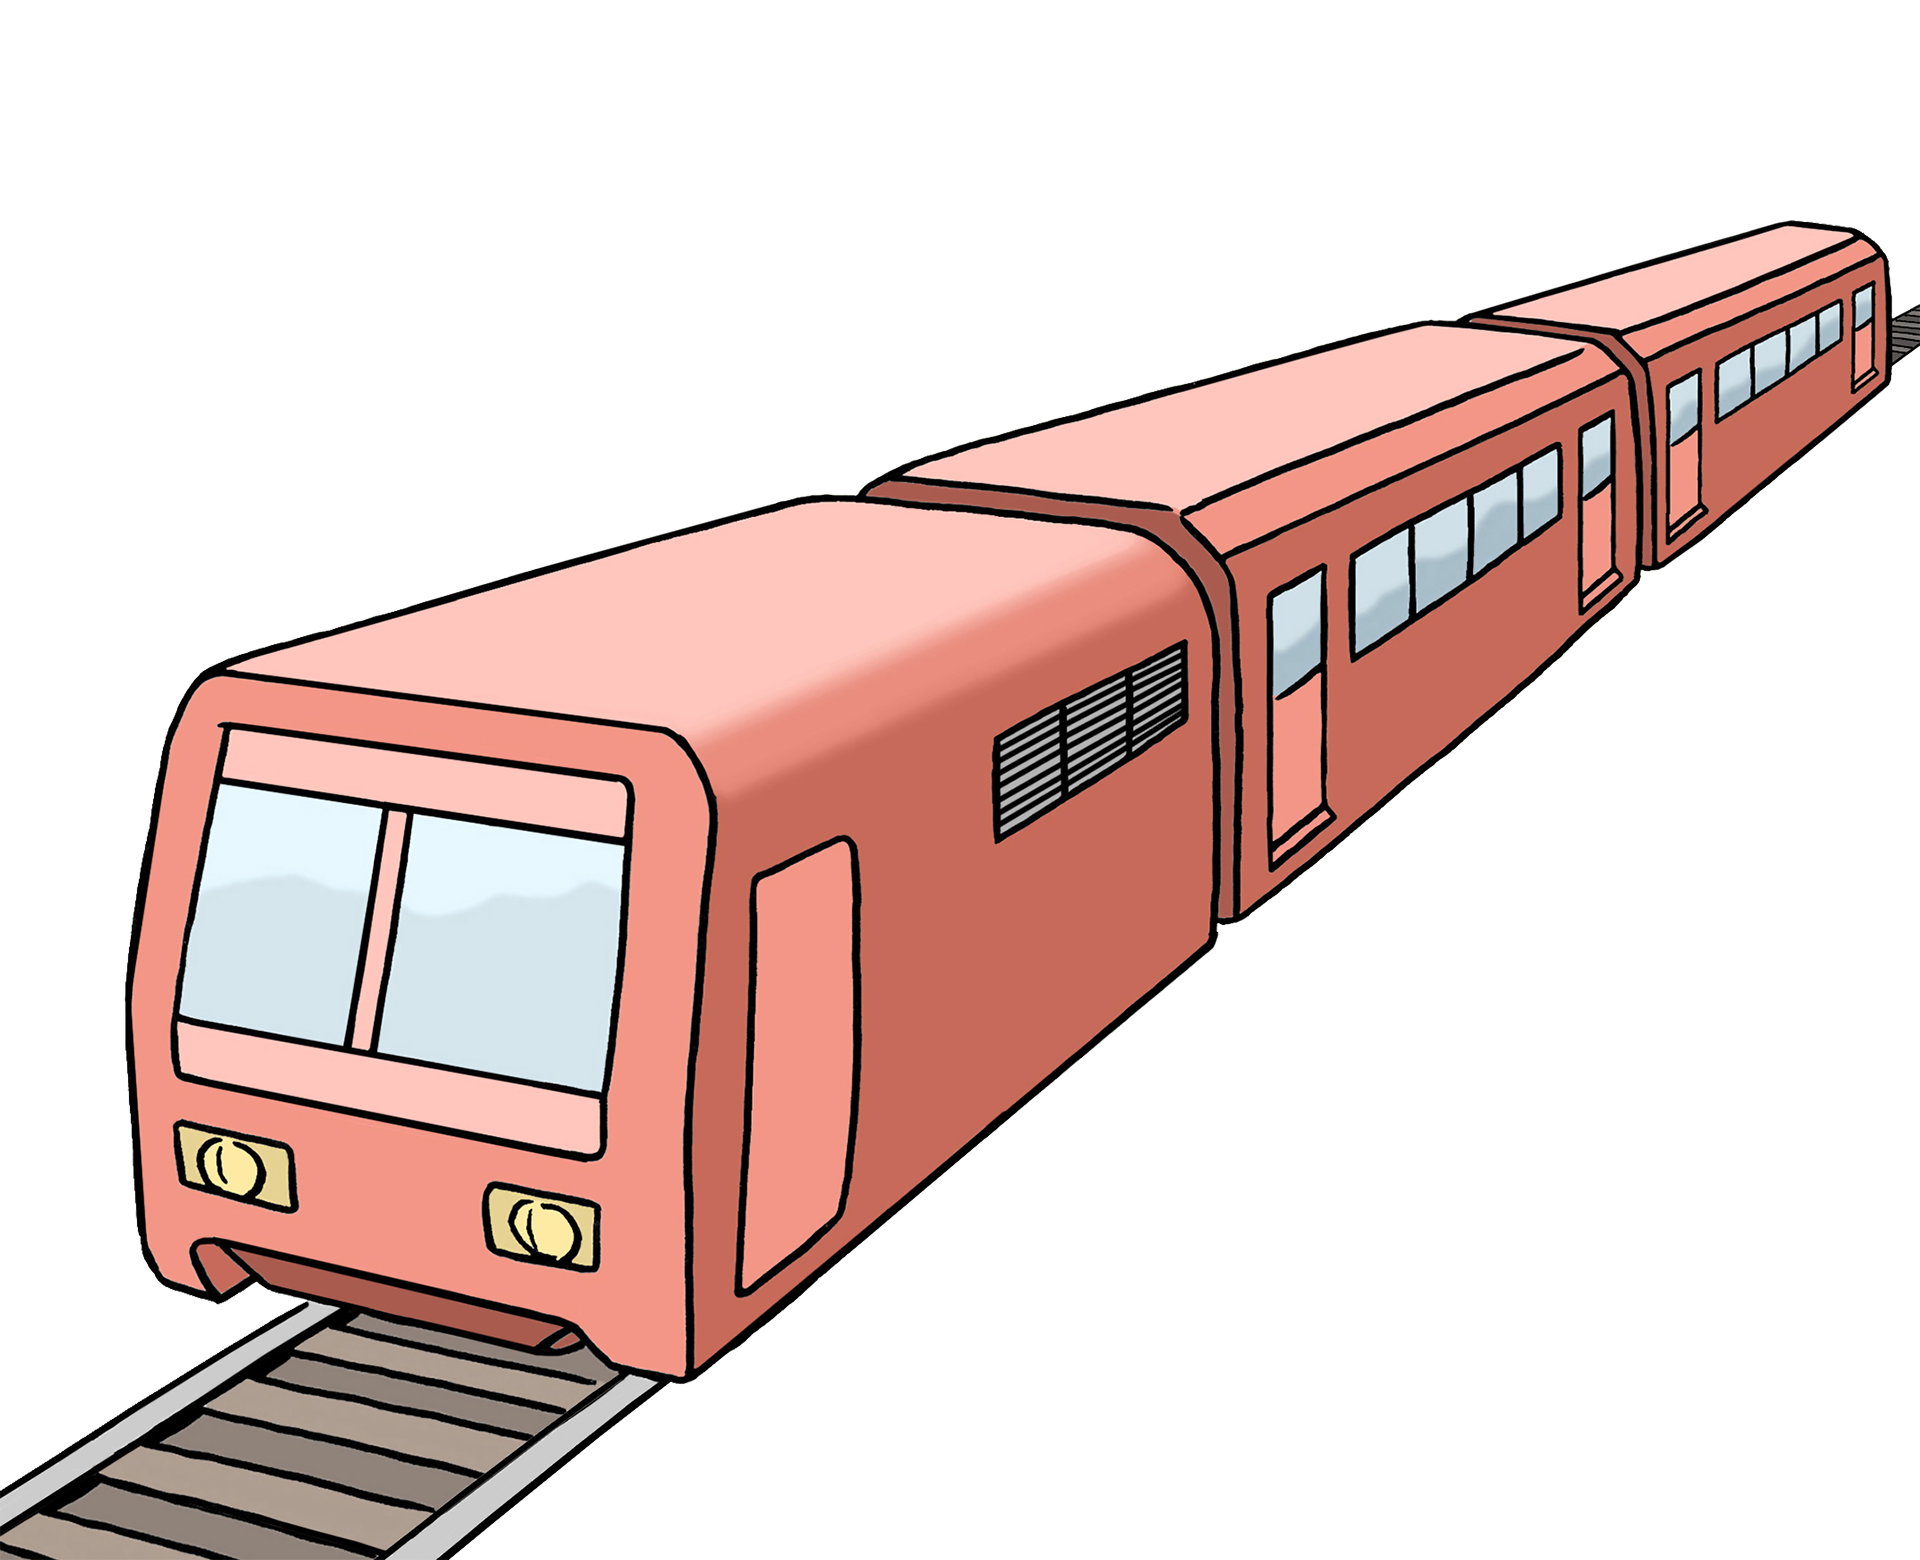 Bild zeigt einen Zug auf Schienenn